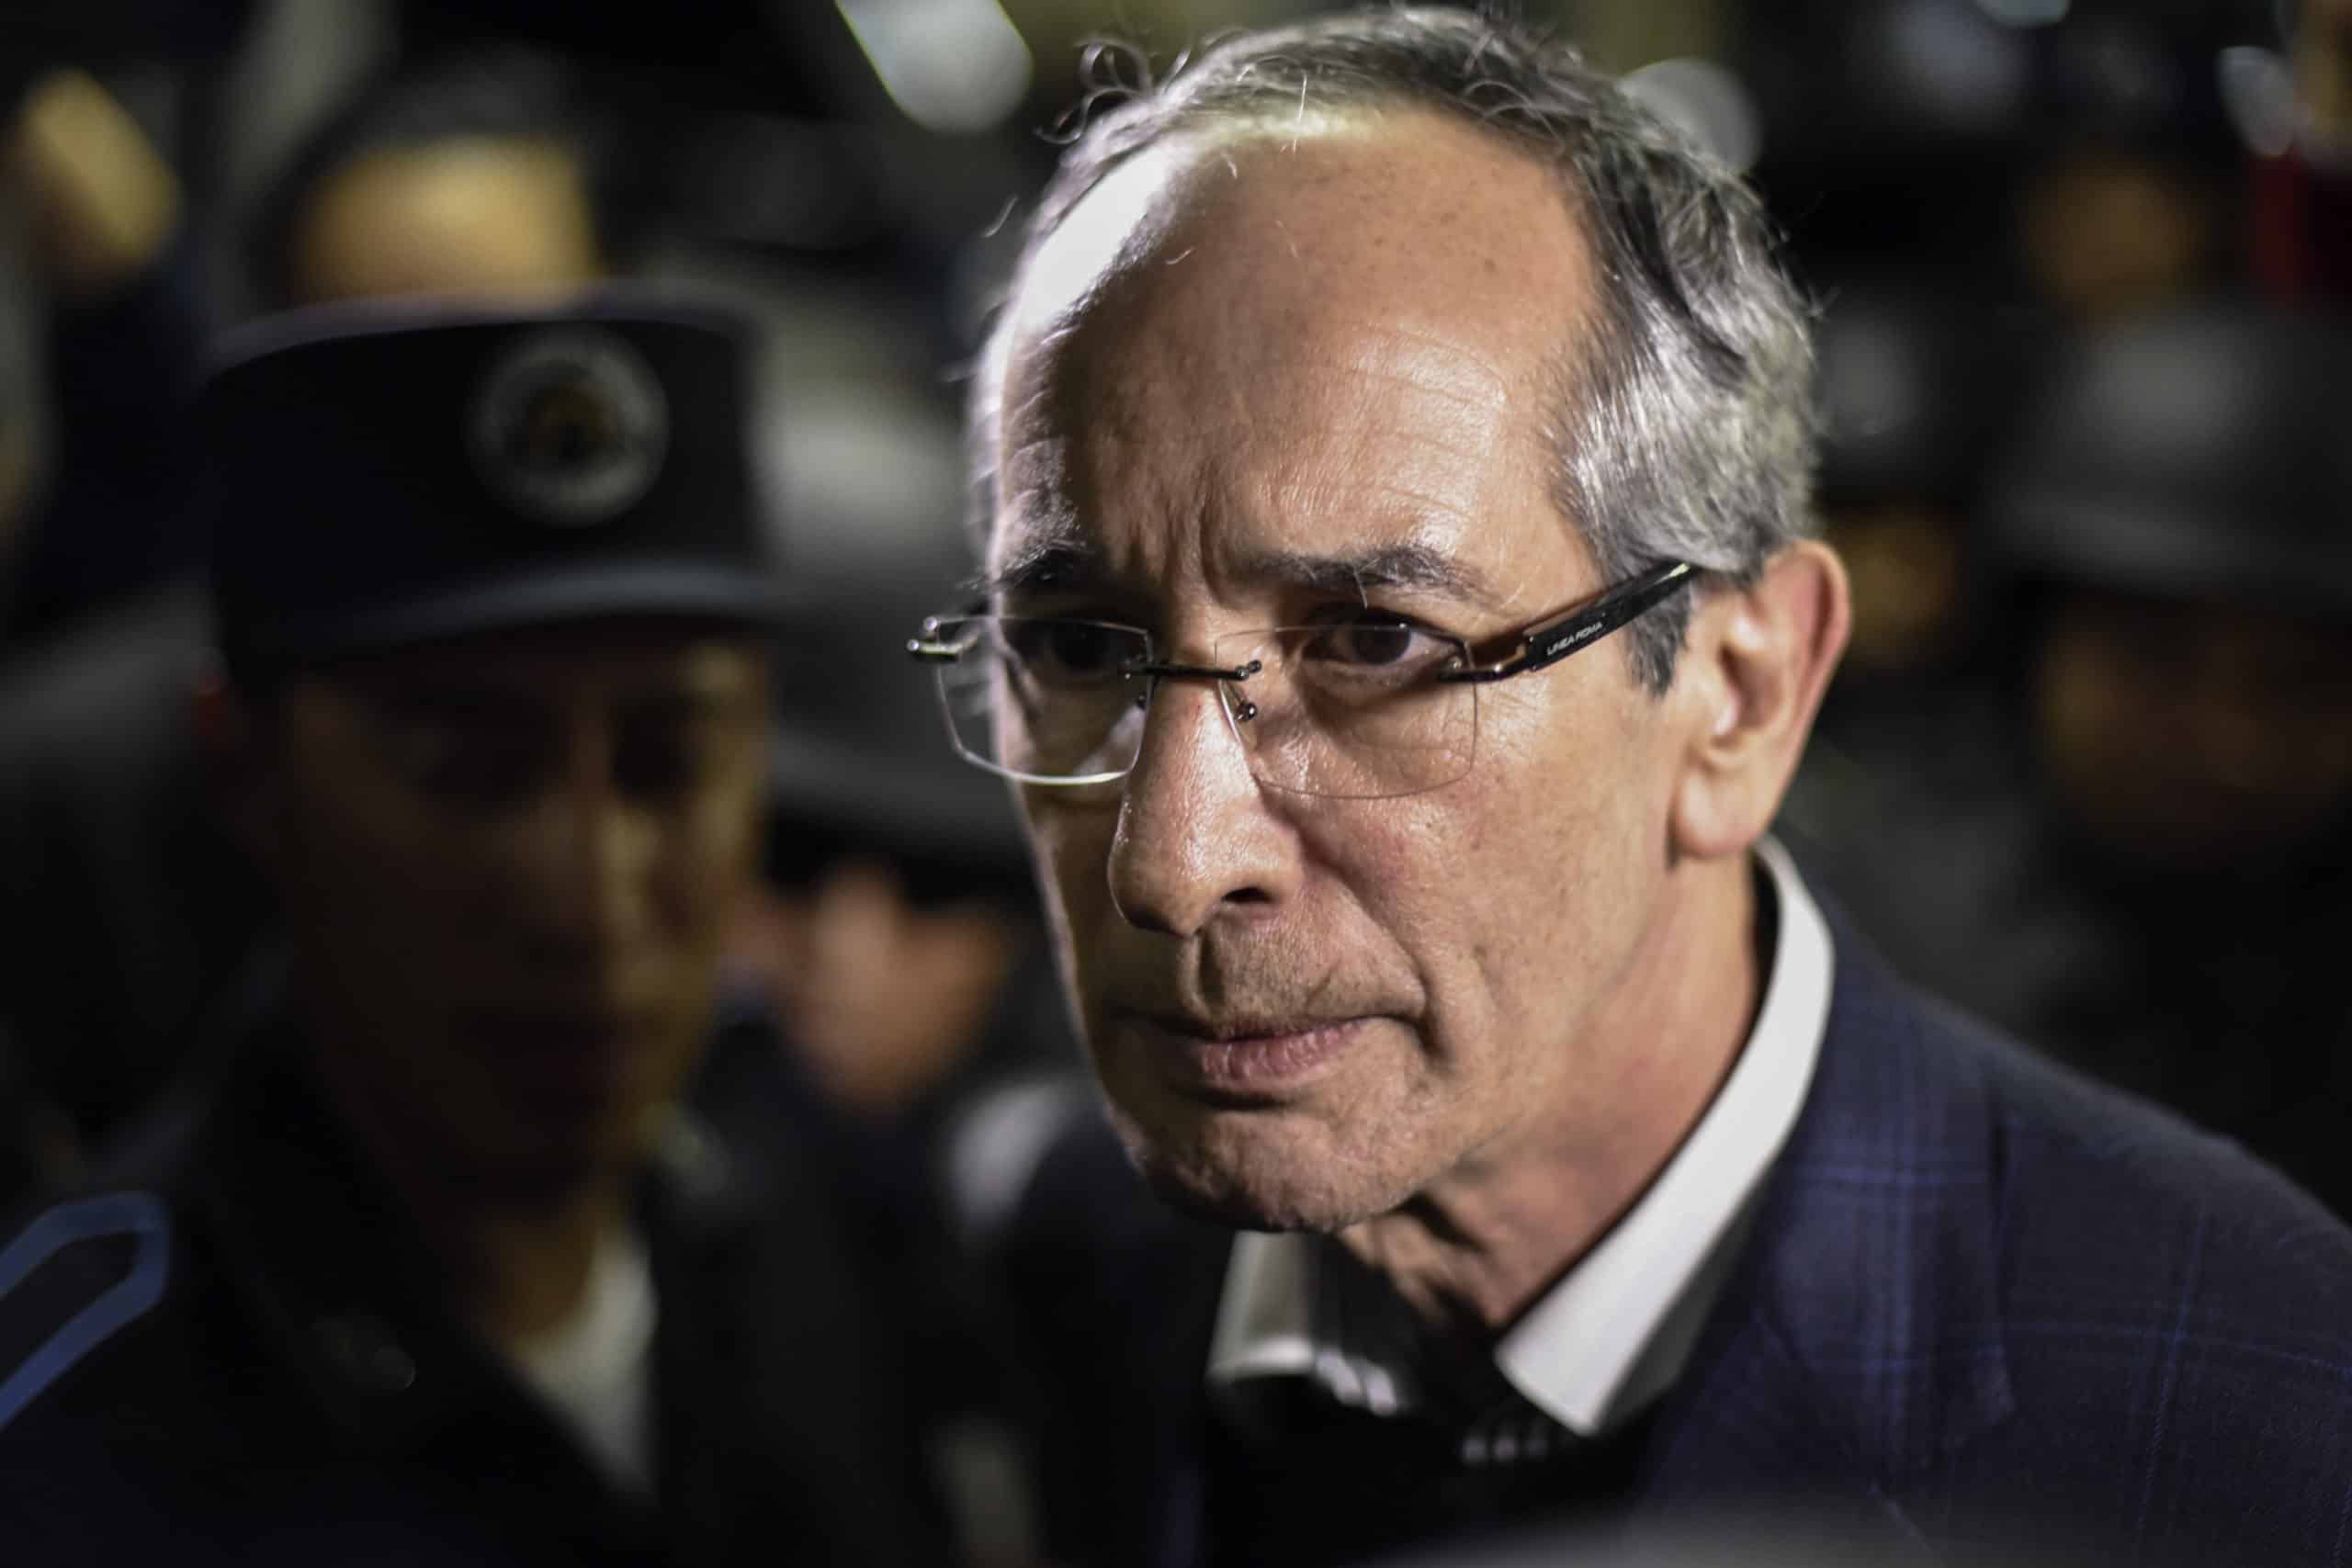 Fallece expresidente guatemalteco, Álvaro Colom, sancionado por corrupción por EE.UU.